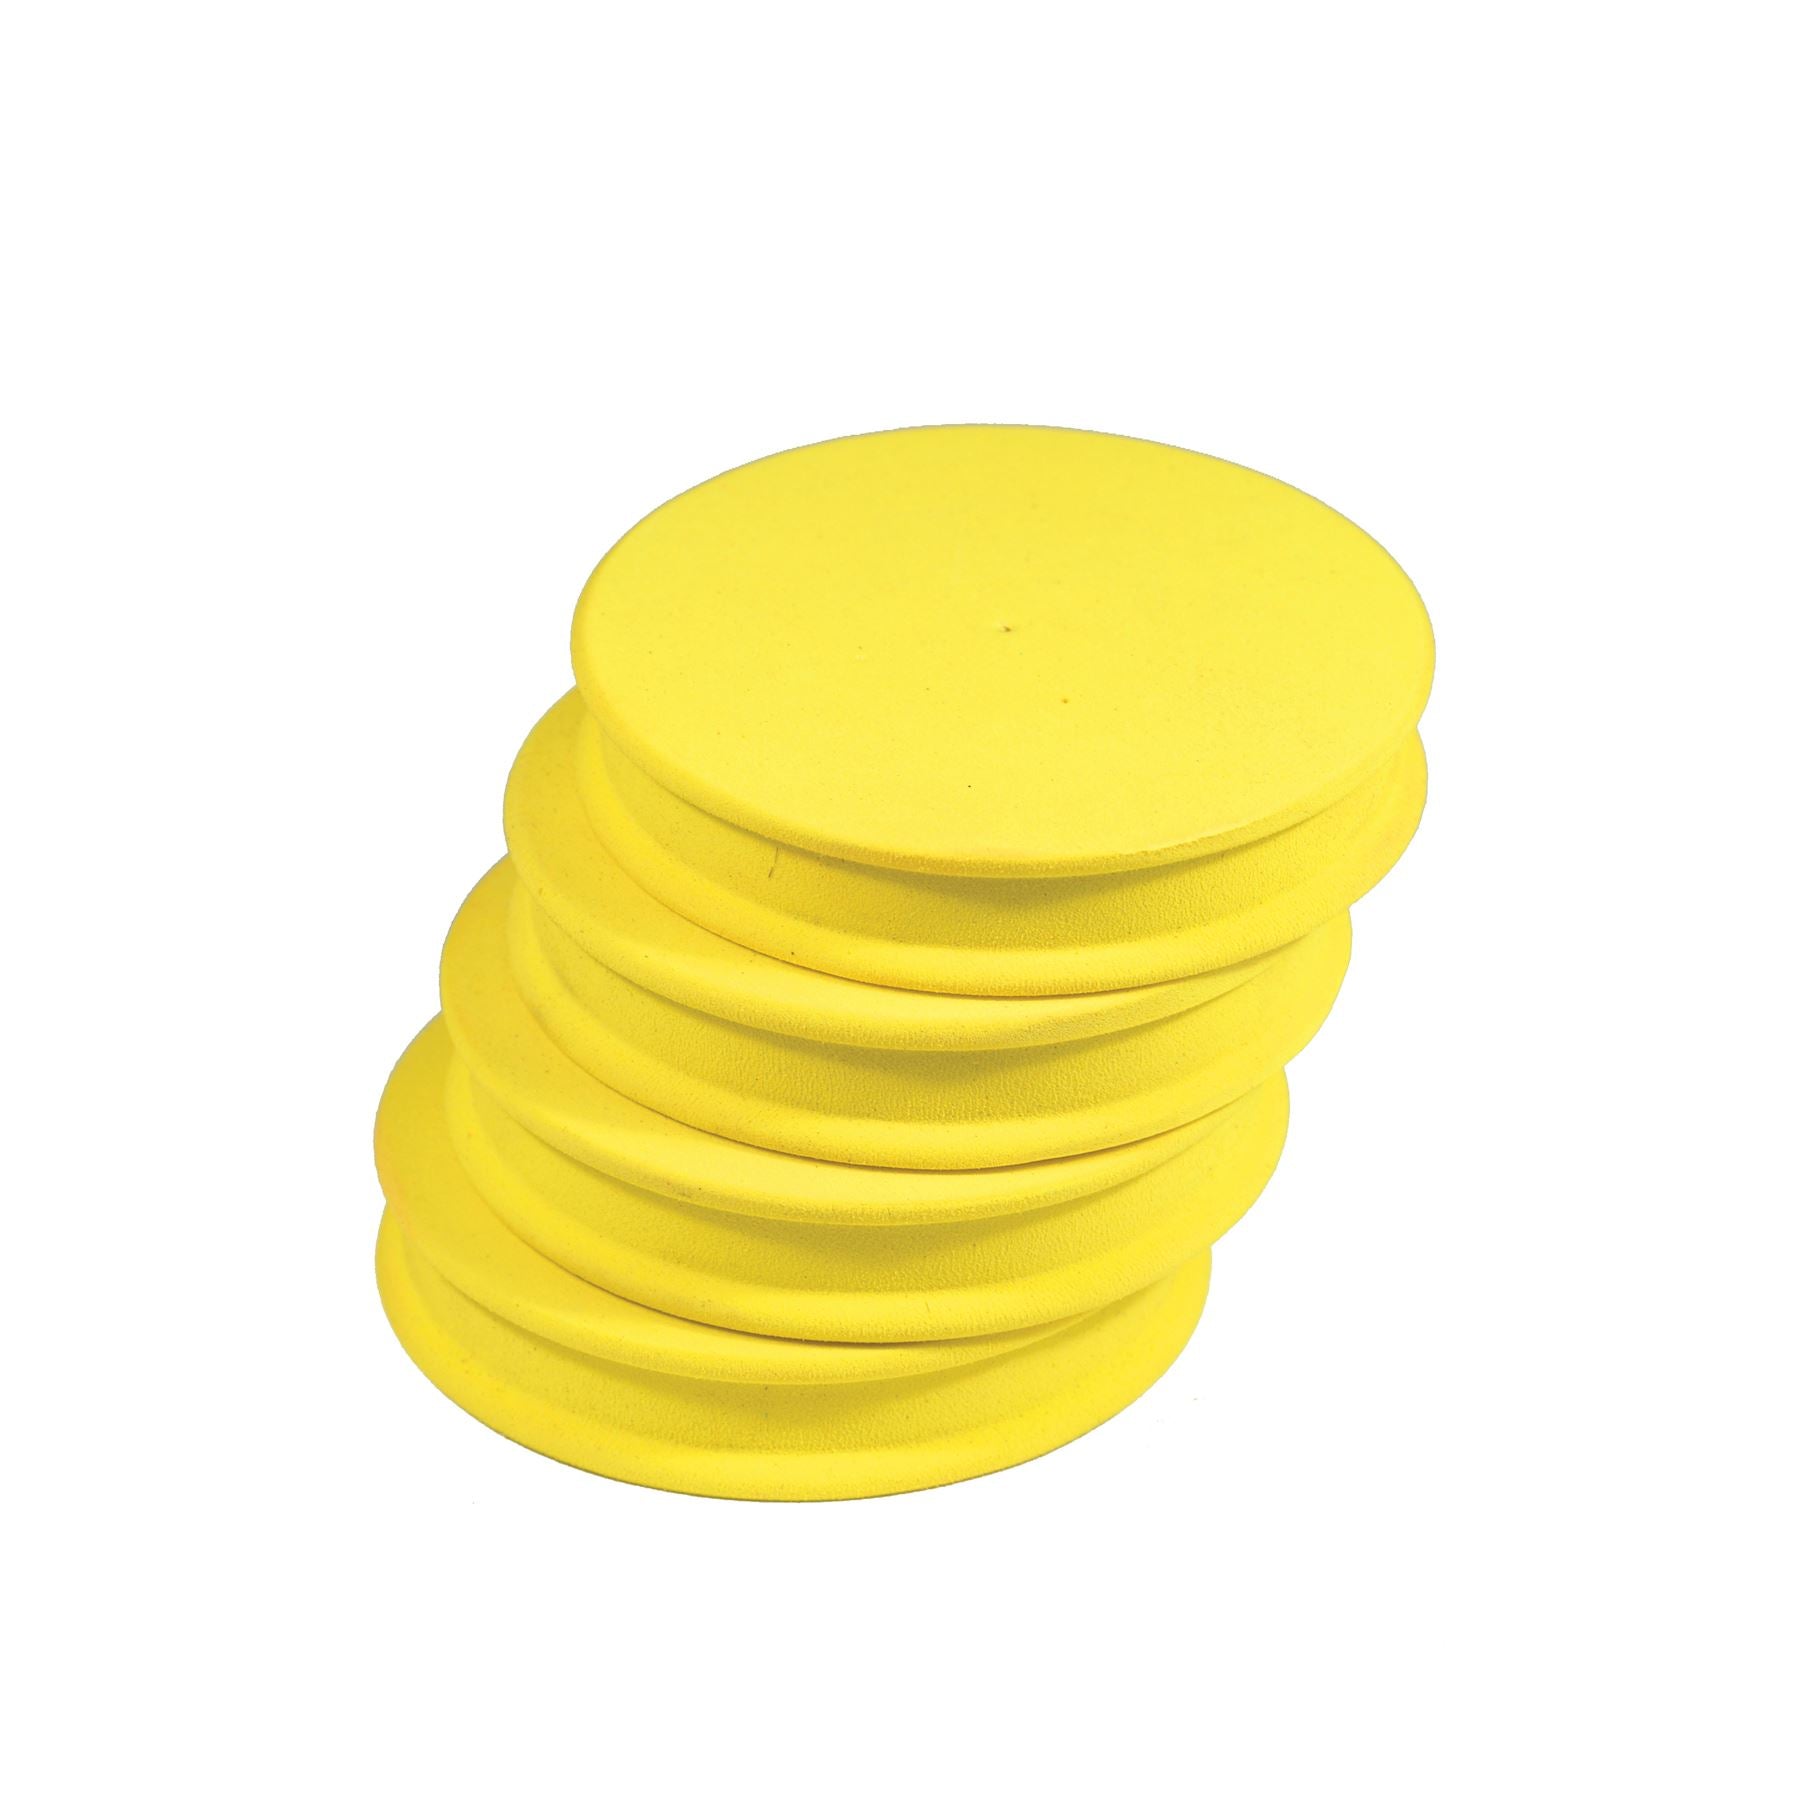 TronixPro Jumbo Rig Winders Yellow (4)